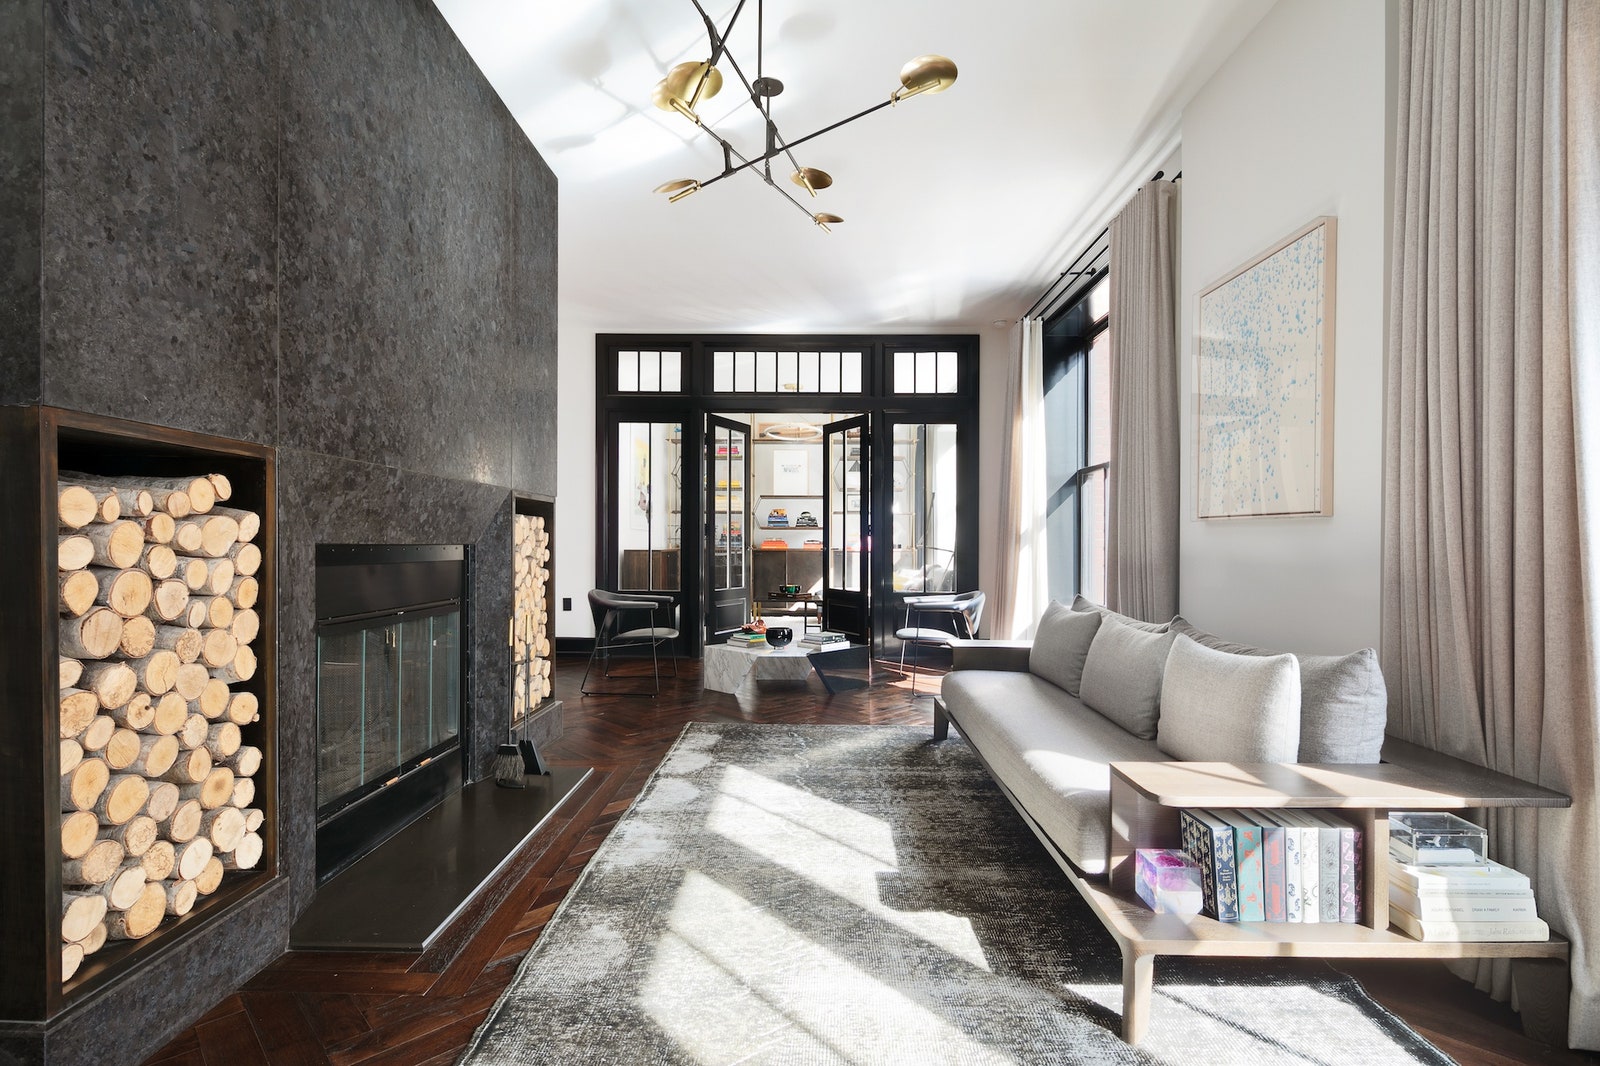 Квартира Карли Клосс и Джошуа Кушнера в НьюЙорке фото апартаментов